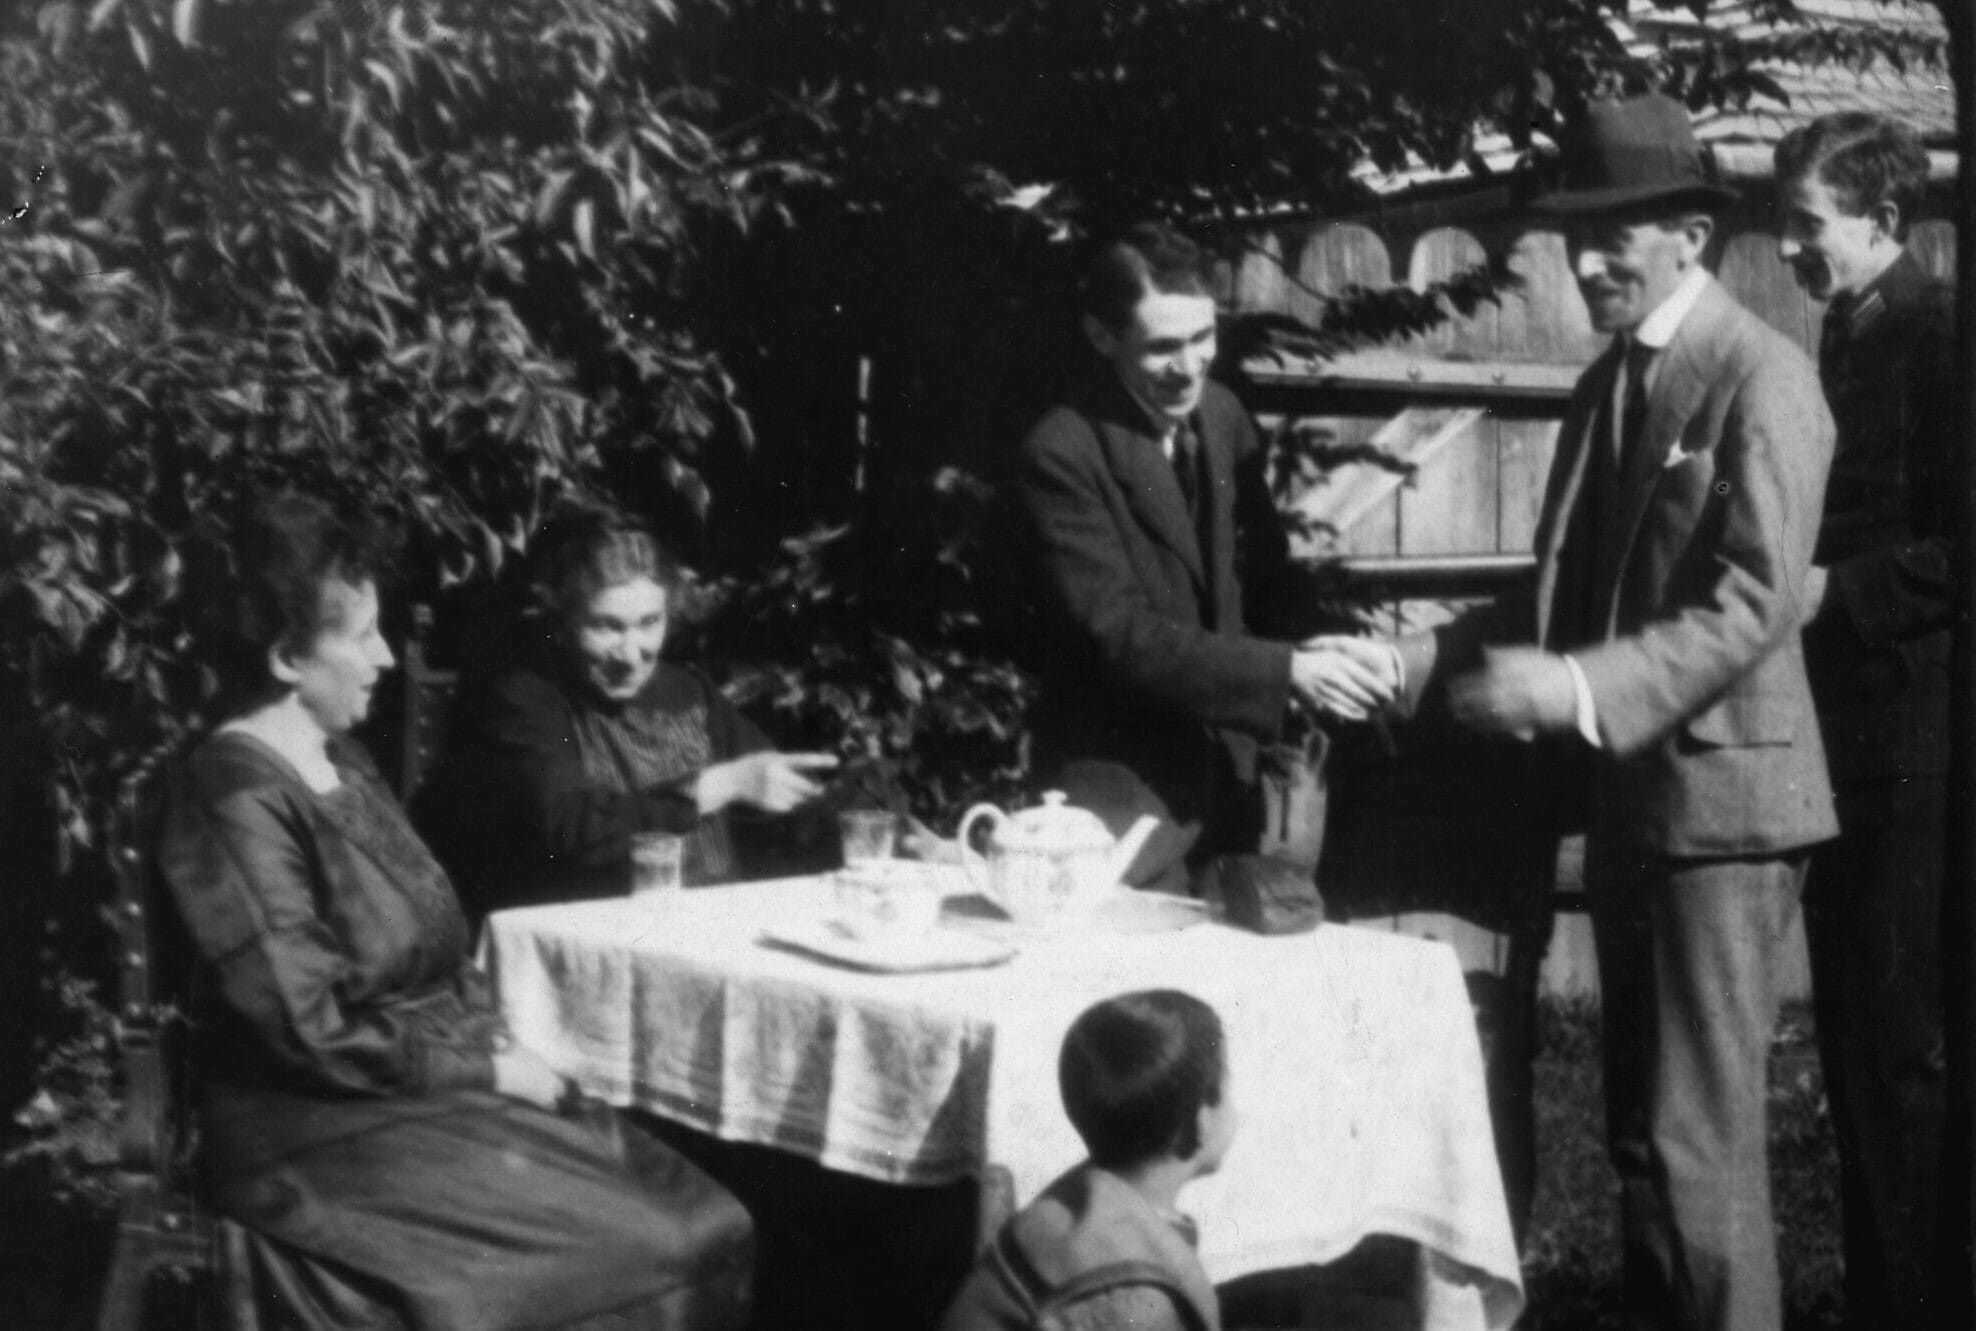 ברונו שולץ (עומד במרכז) עם אימו הנרייטה (יושבת ליד שולץ) ובני משפחה נוספים בחצר ביתם בדרוהוביץ&#8217;, סביבות 1930 (צילום: המוזיאון לספרות ע&quot;ש אדם מיצקביץ&#039;, ורשה)